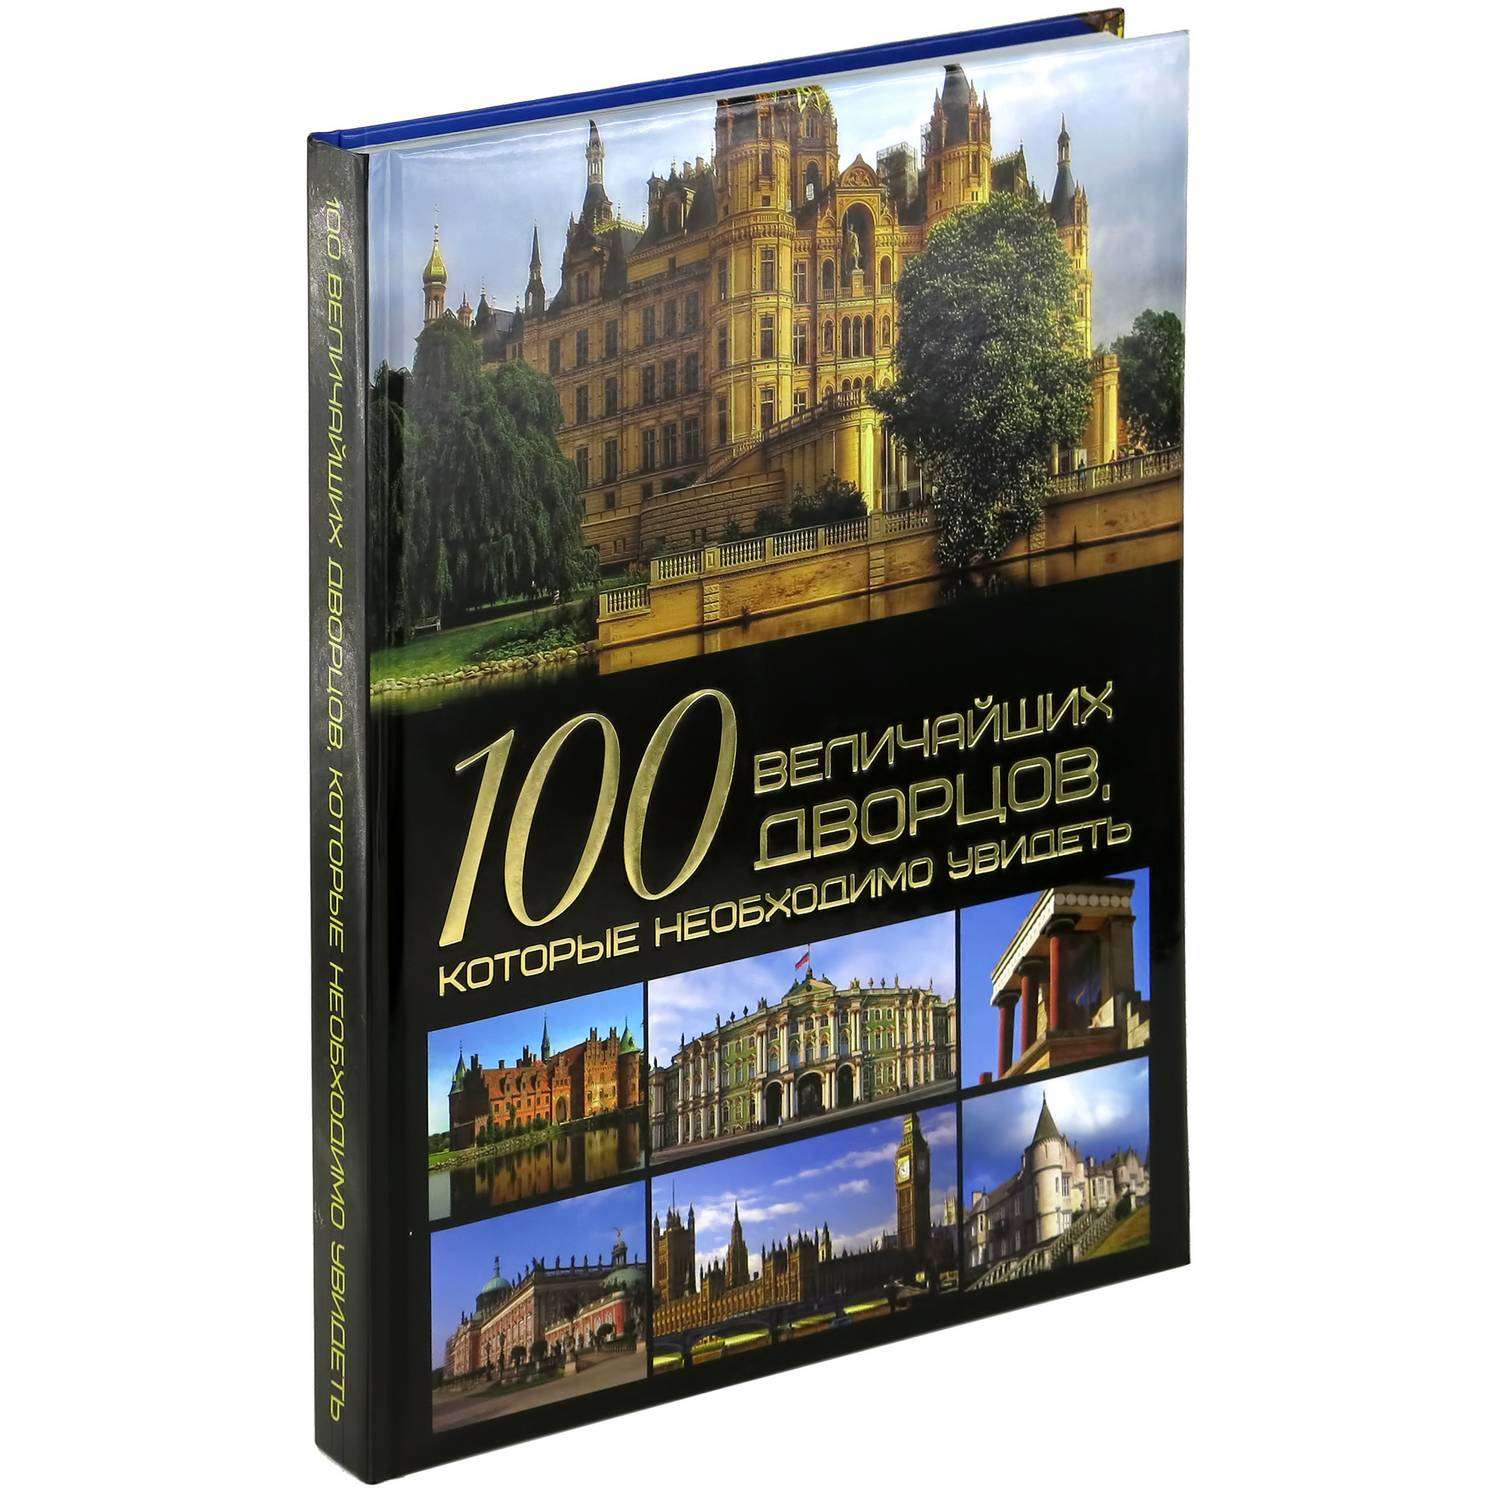 Книга Харвест 100 величайших дворцов которые необходимо увидеть - фото 1